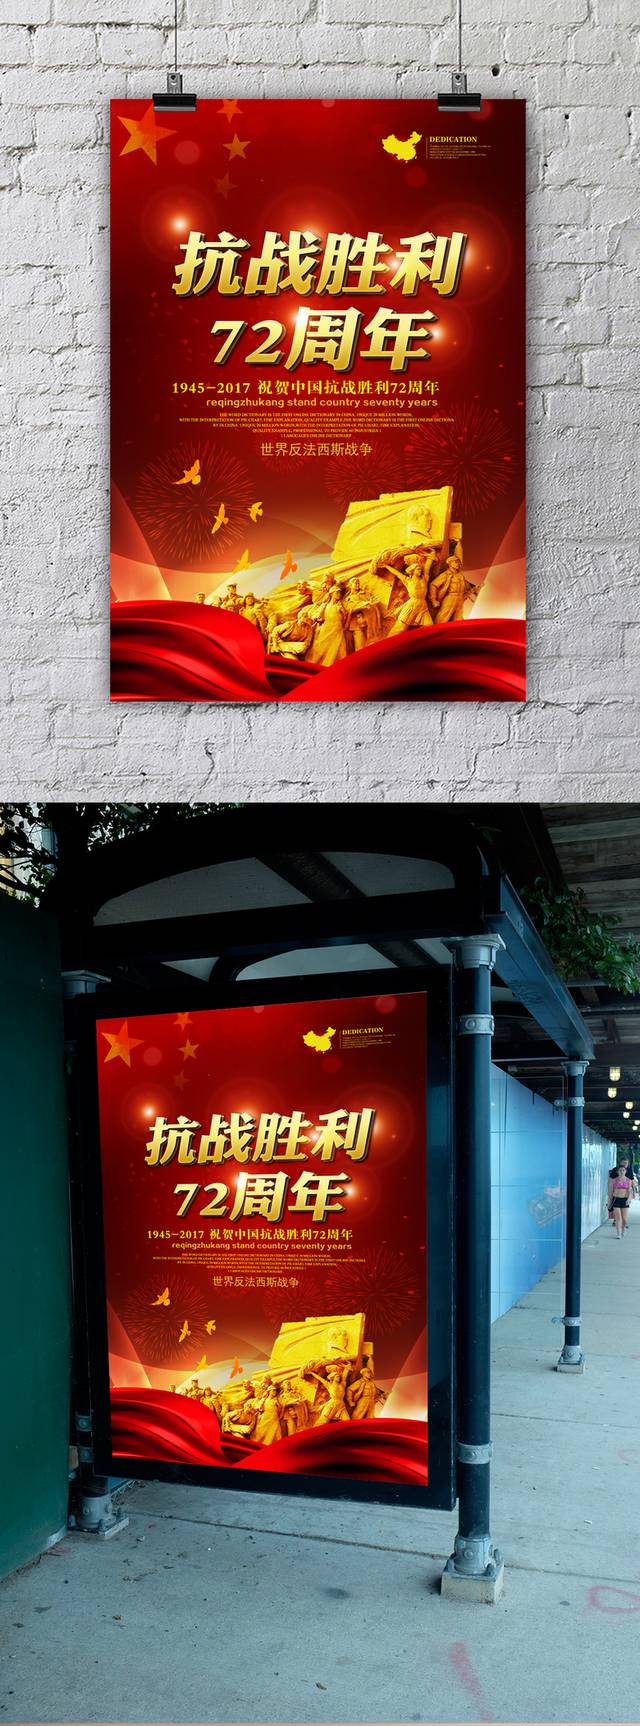 红色大气抗战胜利72周年海报宣传